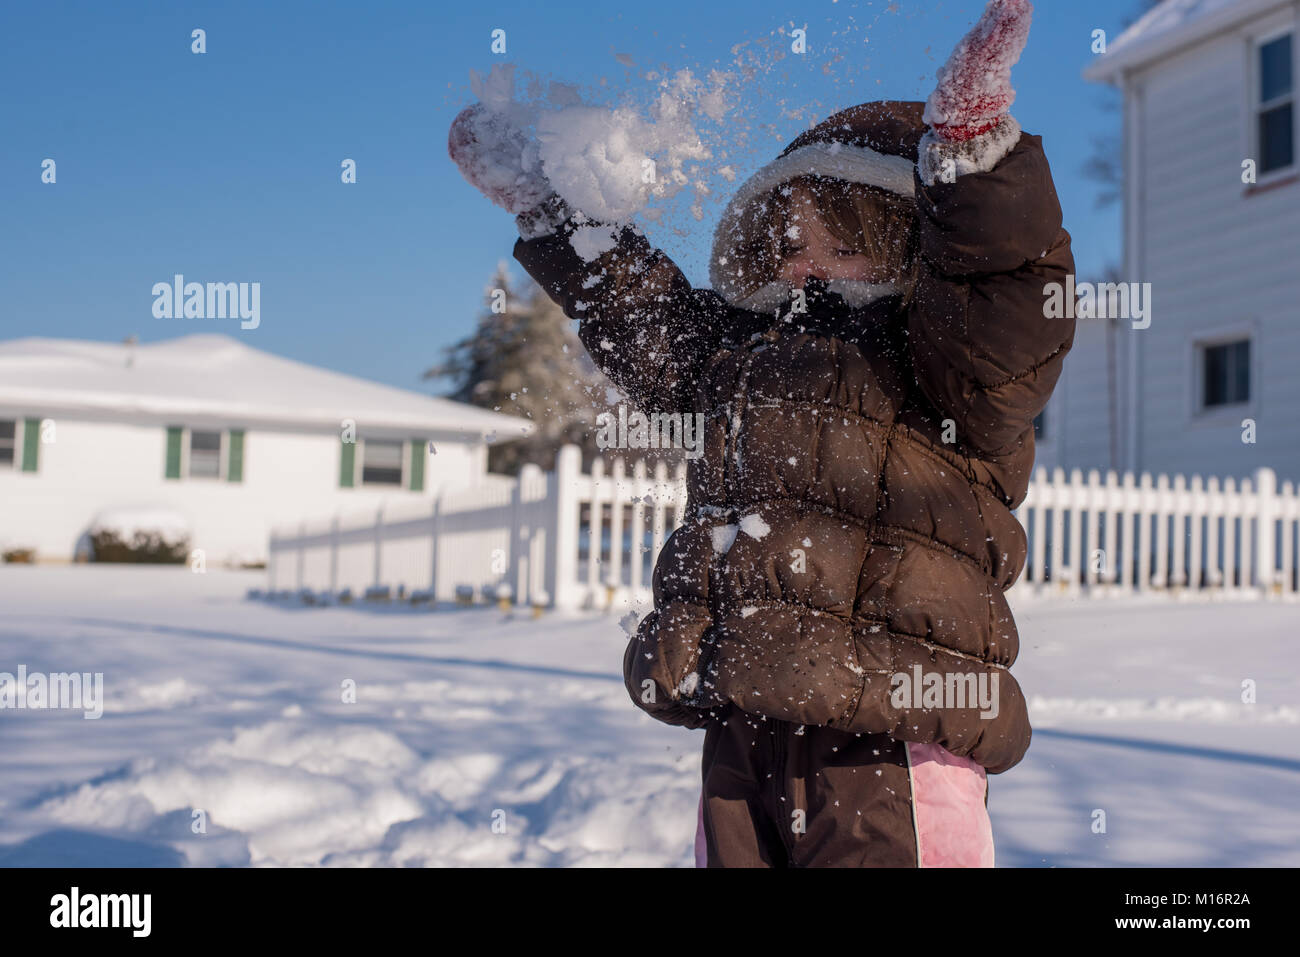 Ein 3-jähriges Kind wirft Schnee in der Luft im Winter Tag in den Vereinigten Staaten. Stockfoto